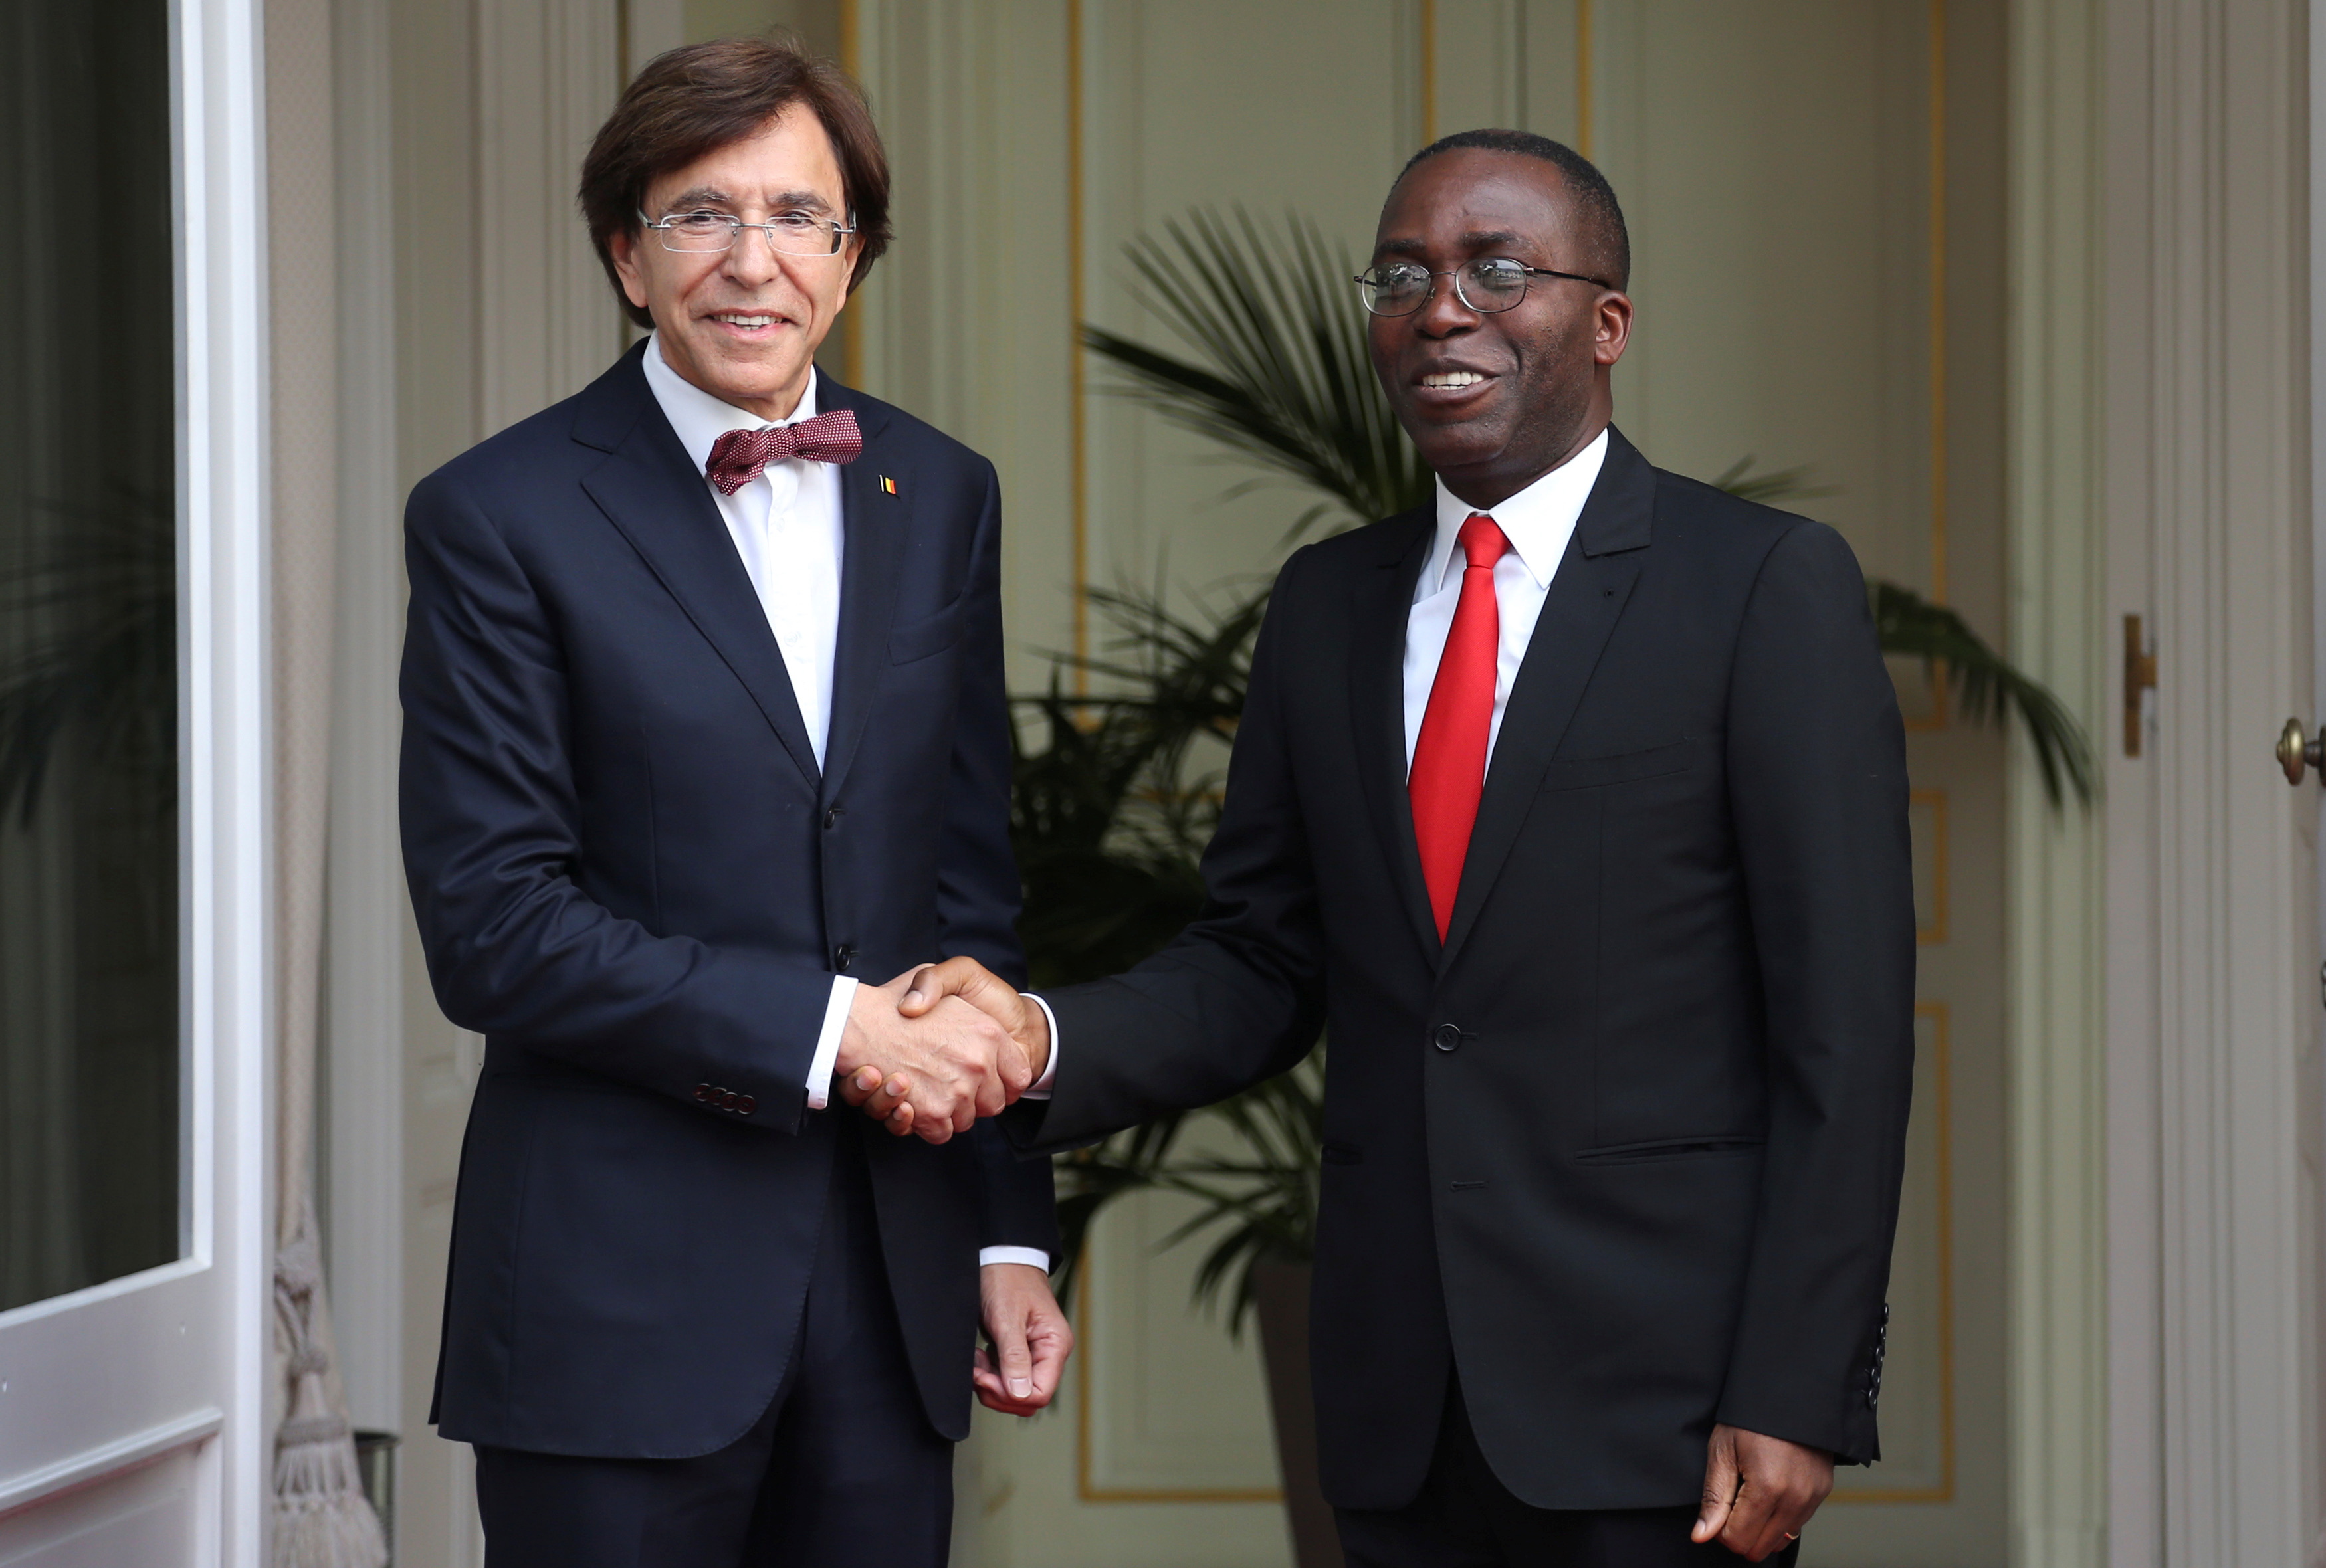 Congo's former PM, Matata, with Belgium's former PM, Di Rupo, in 2014